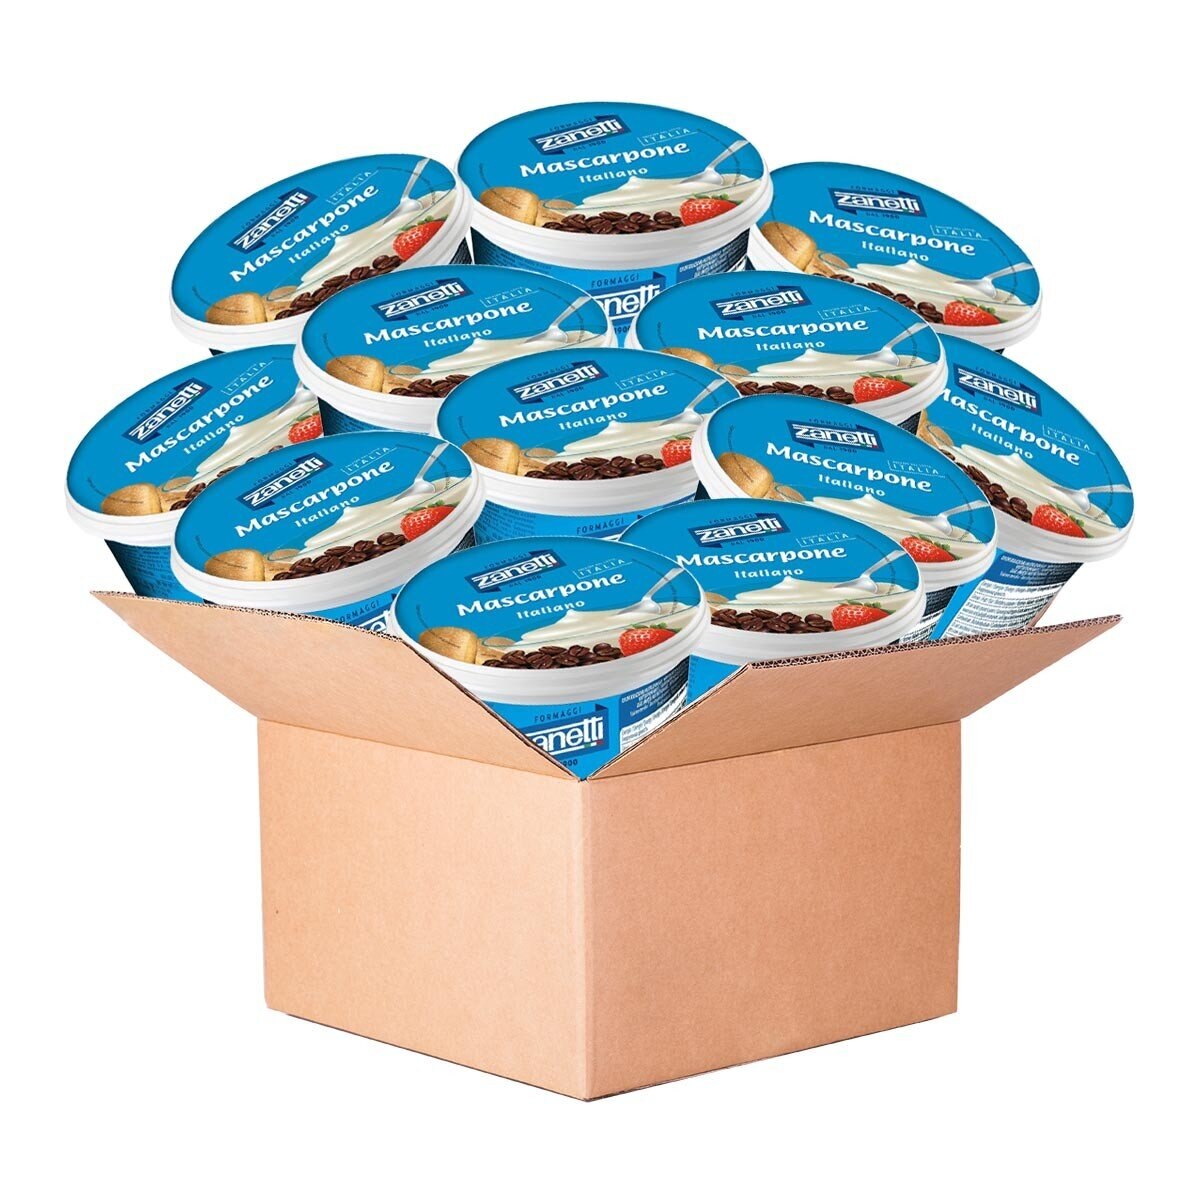 Zanetti 瑪斯卡邦乳酪 500公克 X 12盒 僅配送至雙北市區域